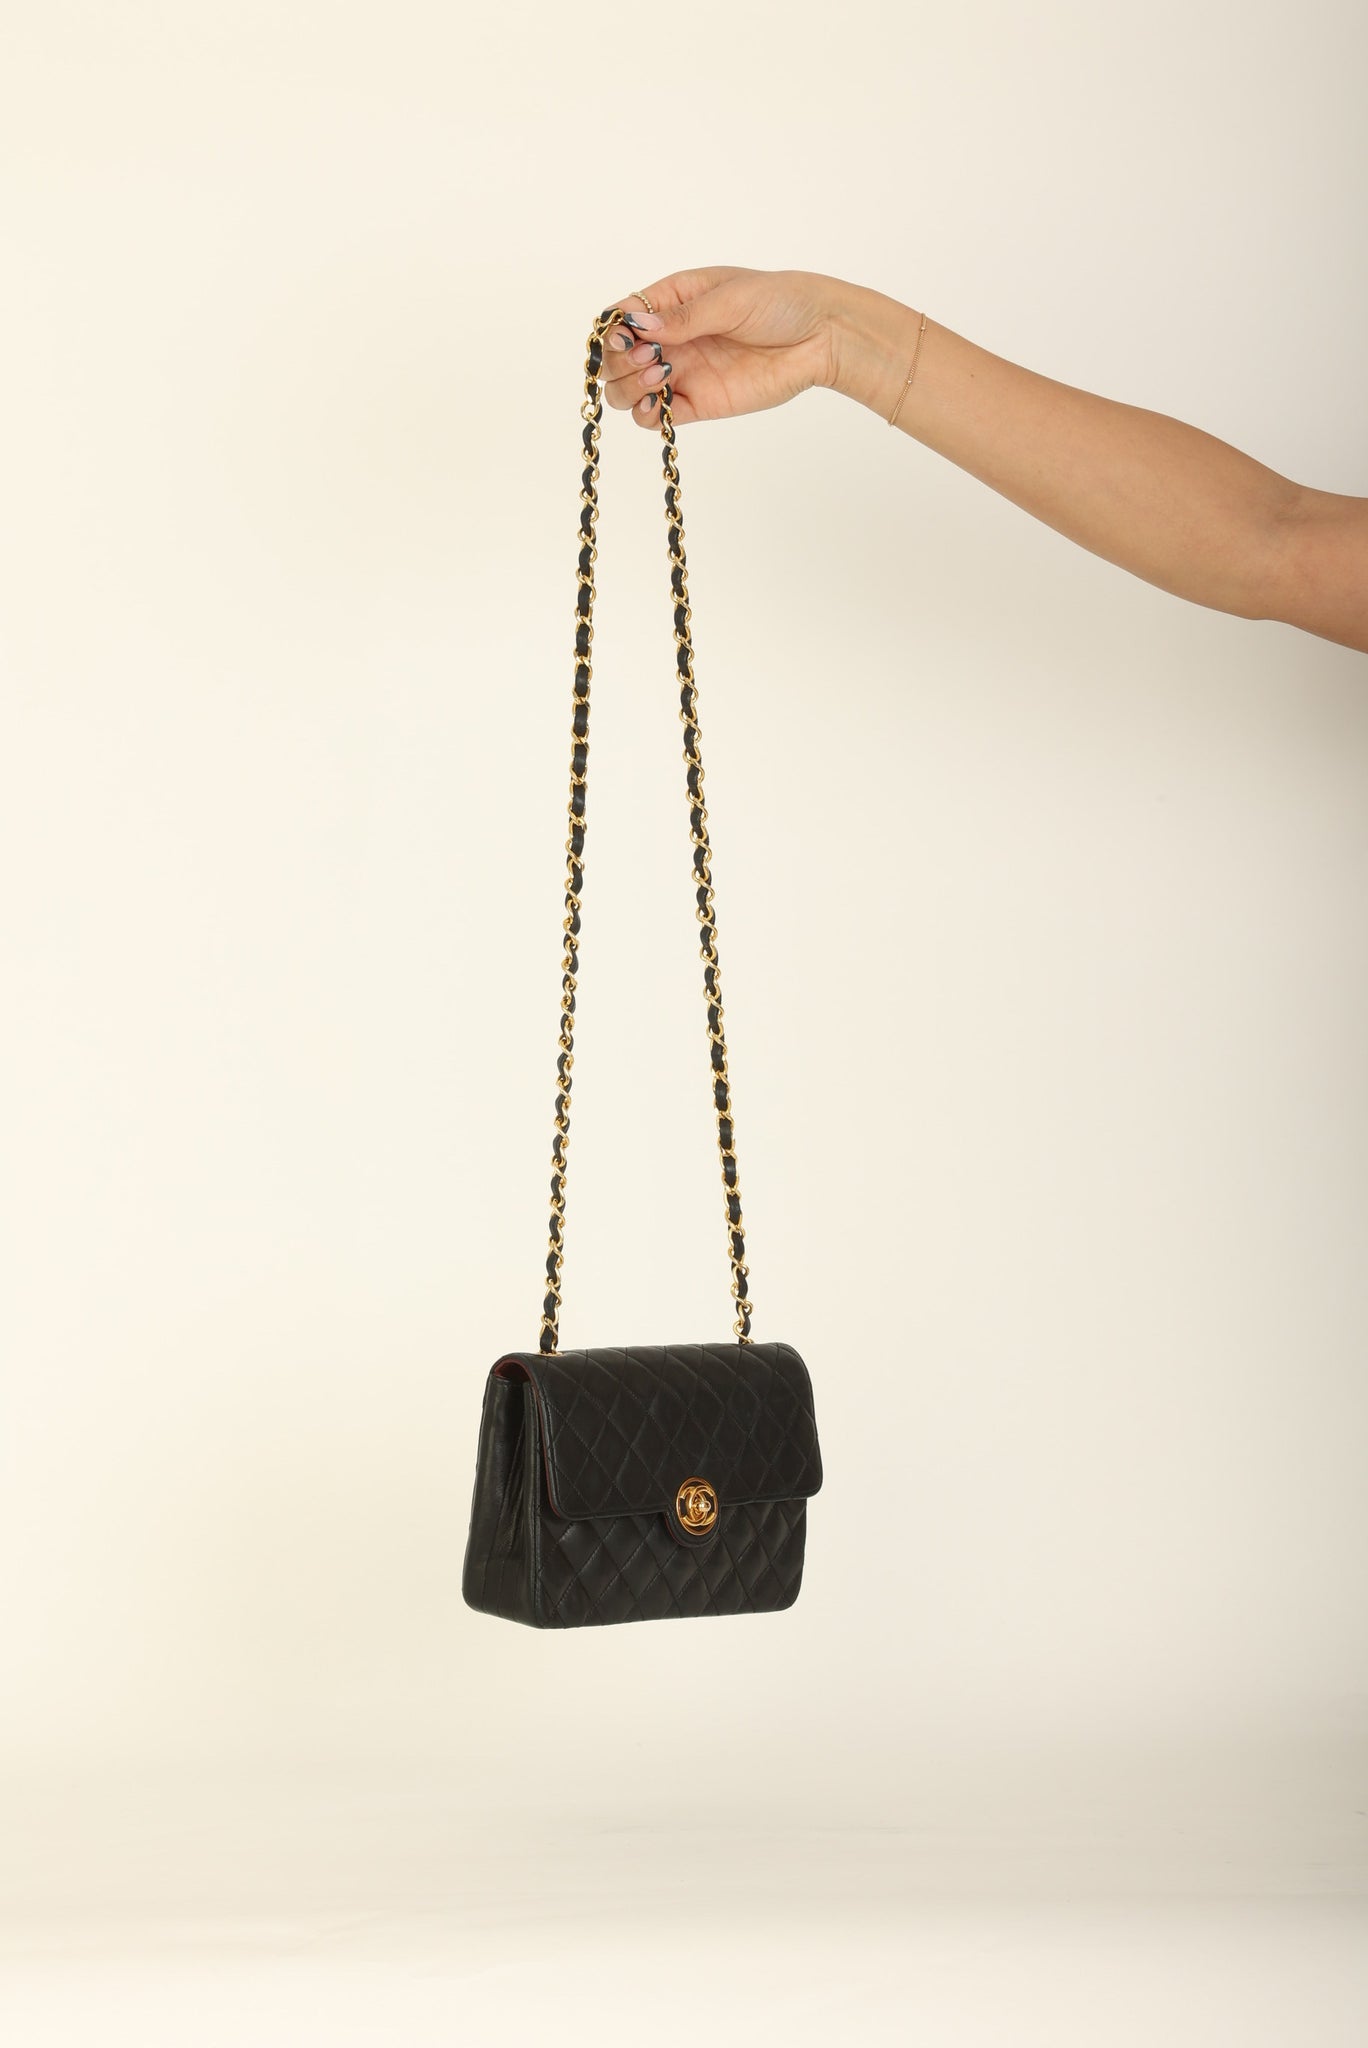 Chanel 1989 Lambskin Mini Flap Bag